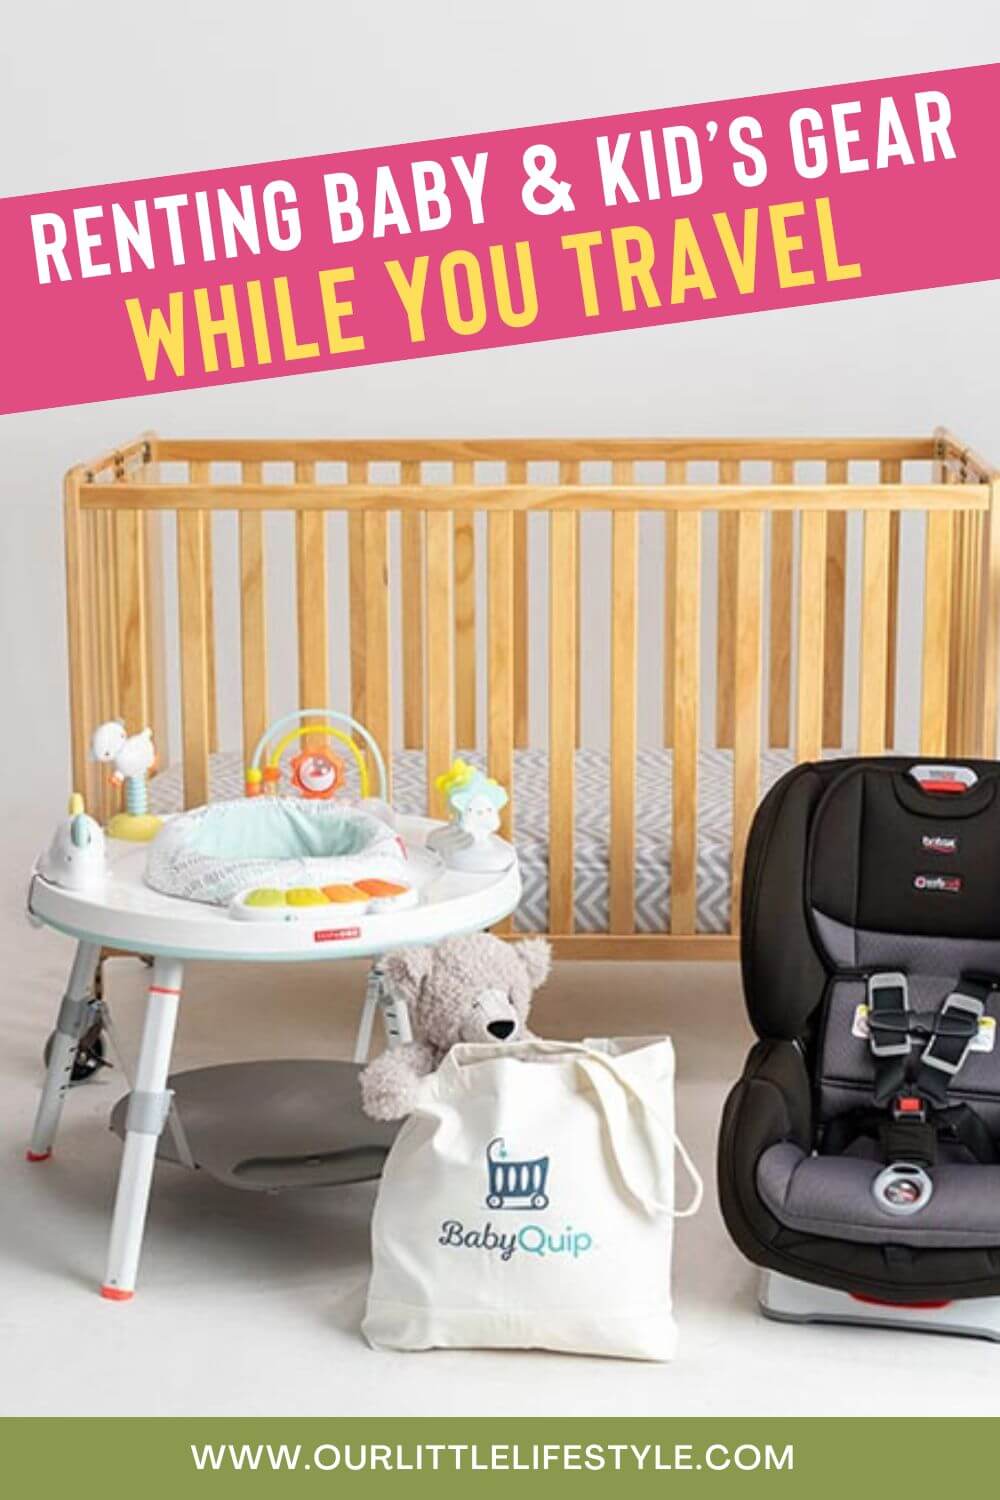 BabyQuip Baby Equipment Rental